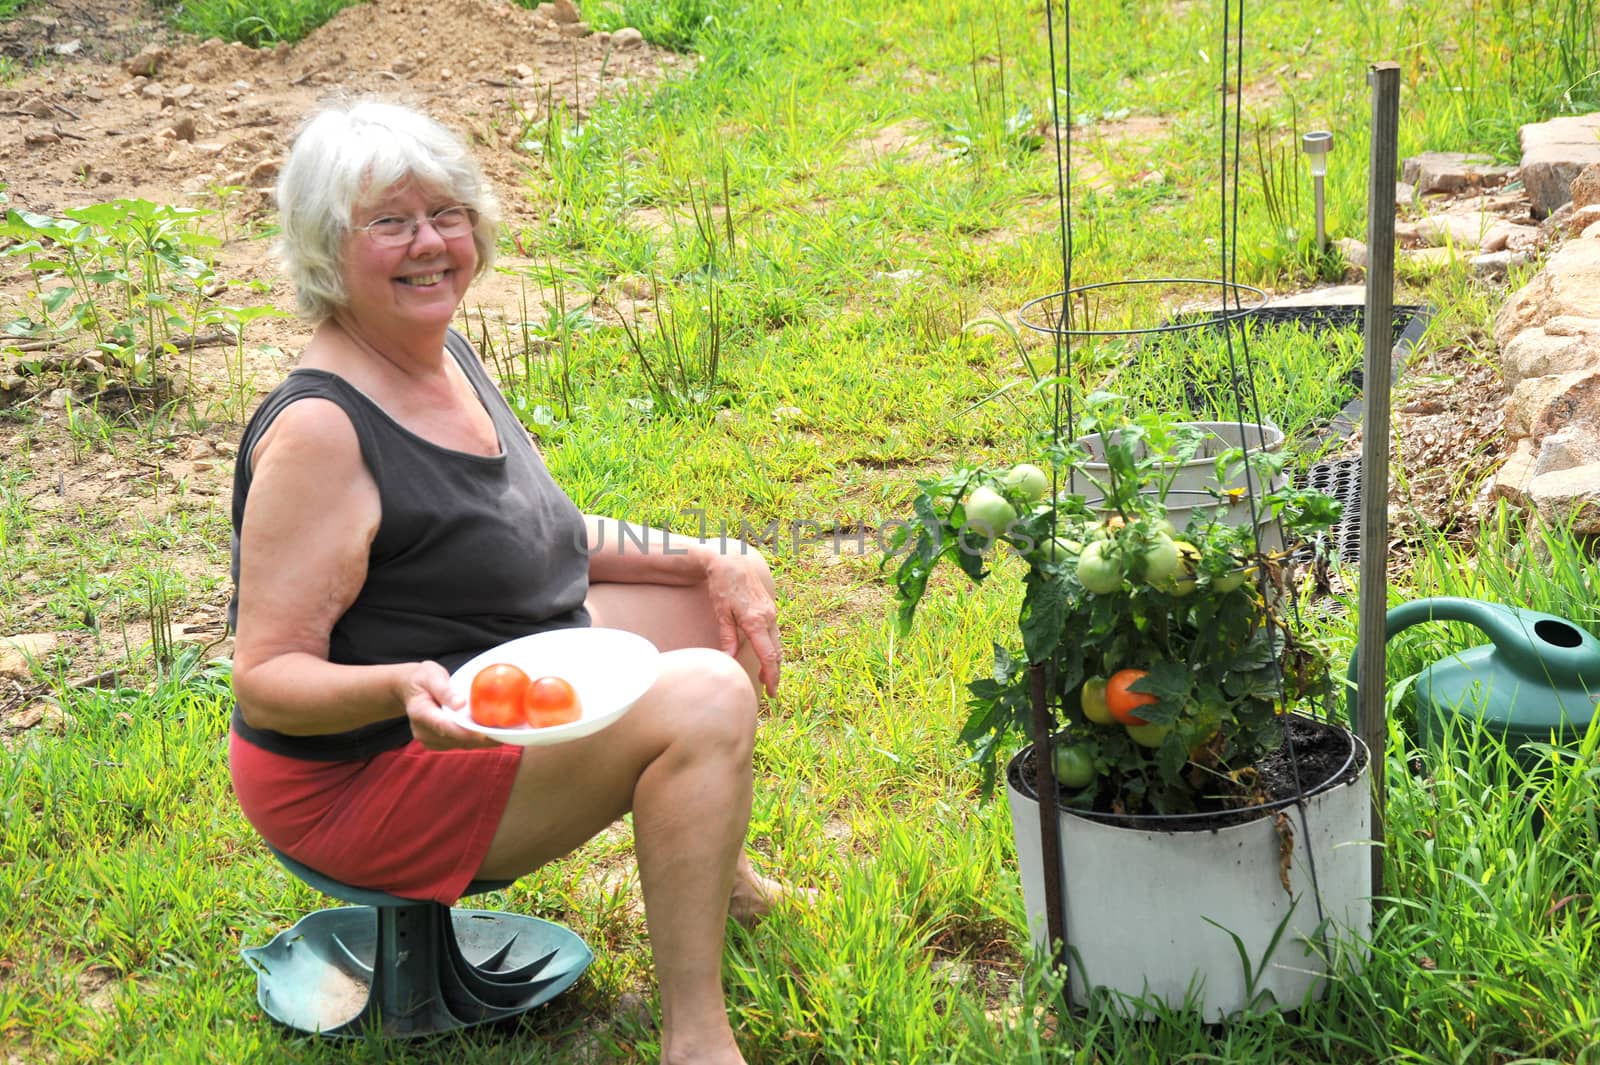 Female gardener picking tomatoes from her garden outside.